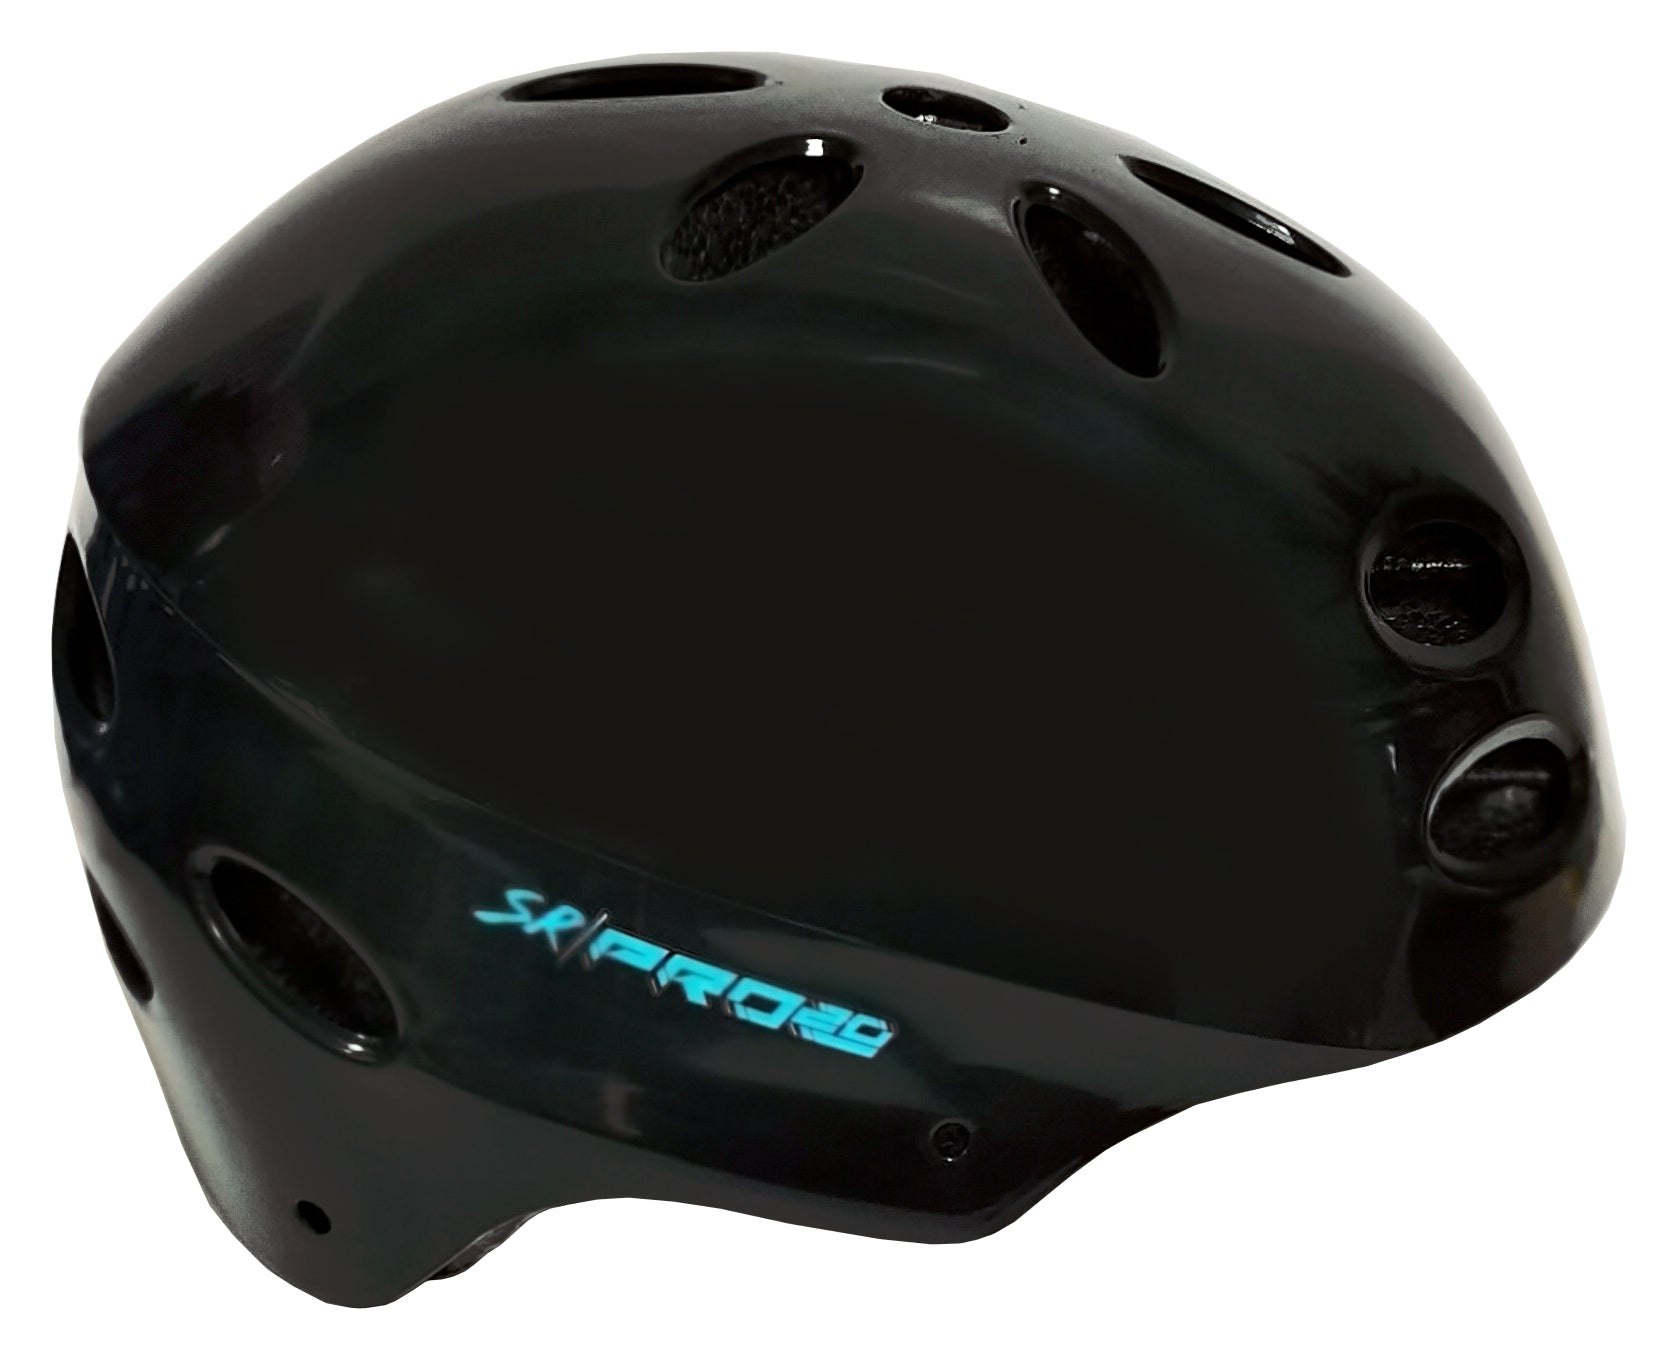 Vélo SR Pro 20" avec casque